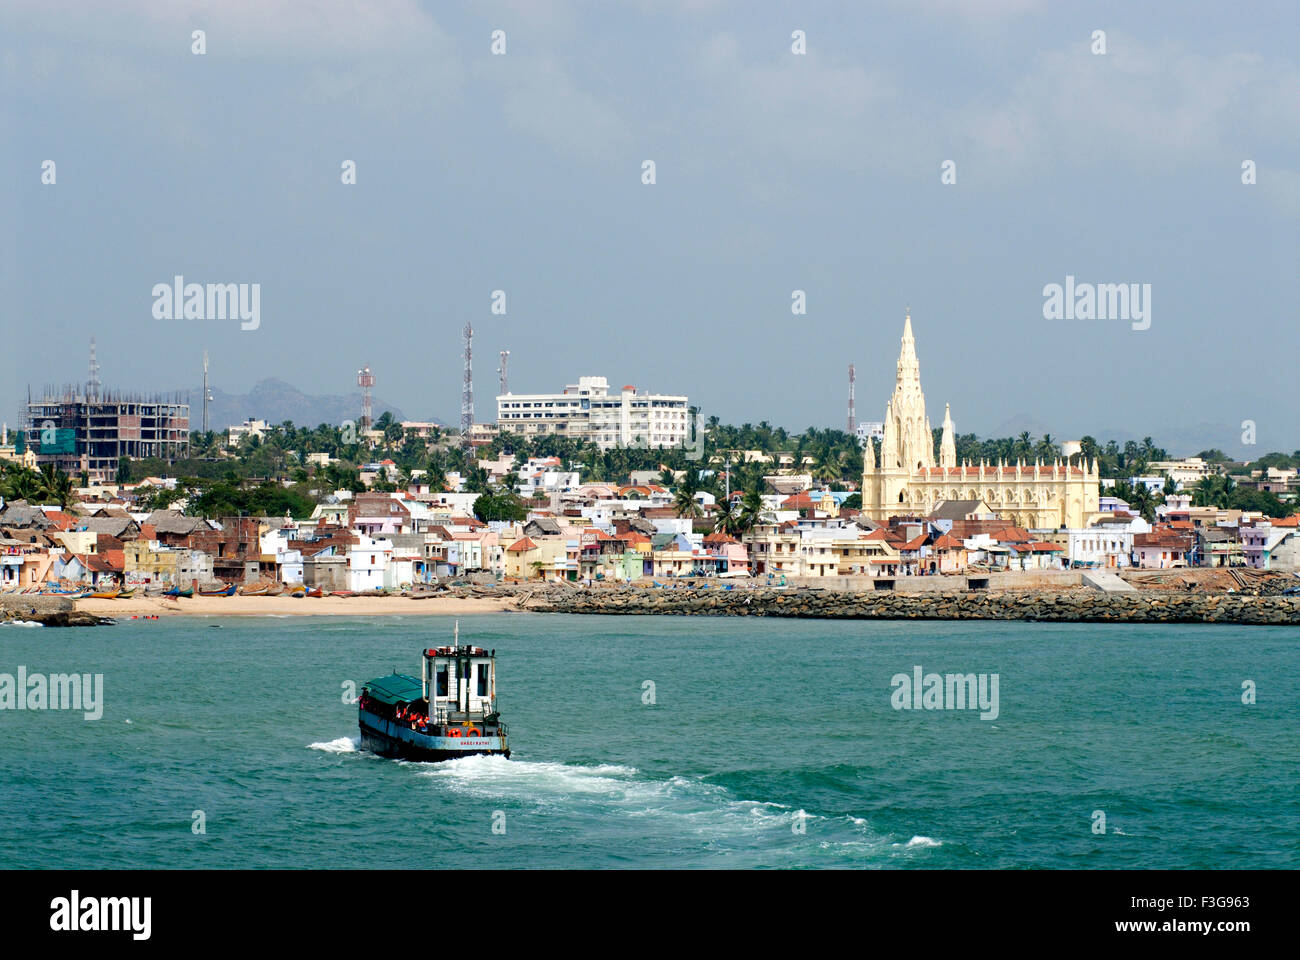 Nuestra Señora de la merced iglesia ; ; hoteles casas de pueblo ; servicio de ferry y la costa de Kanyakumari ; de Tamil Nadu, India ; Foto de stock